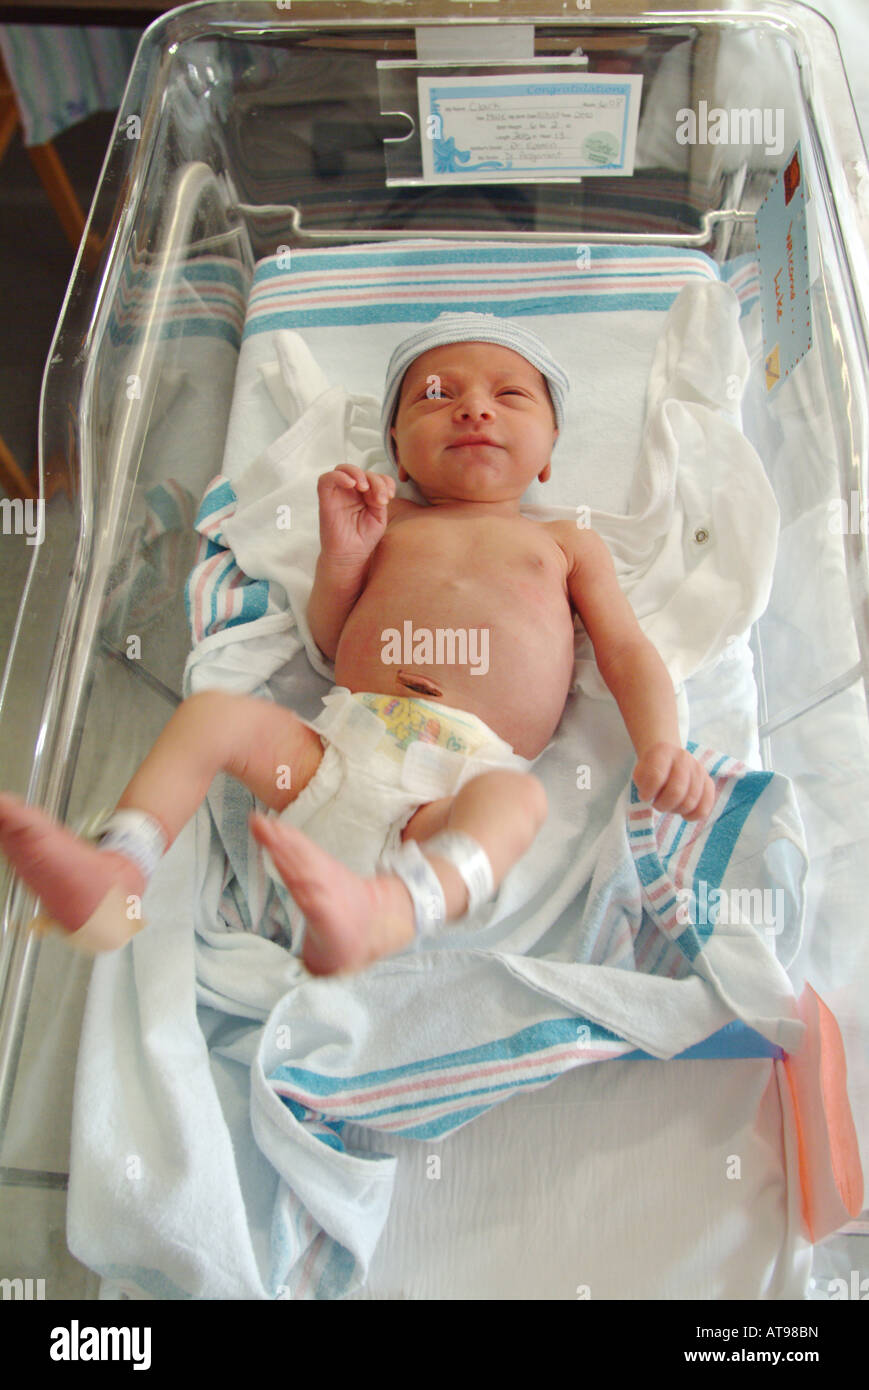 Bébé nouveau-né garçon à l'hôpital Massachusetts (MA) Etats-Unis d'Amérique (USA) Banque D'Images